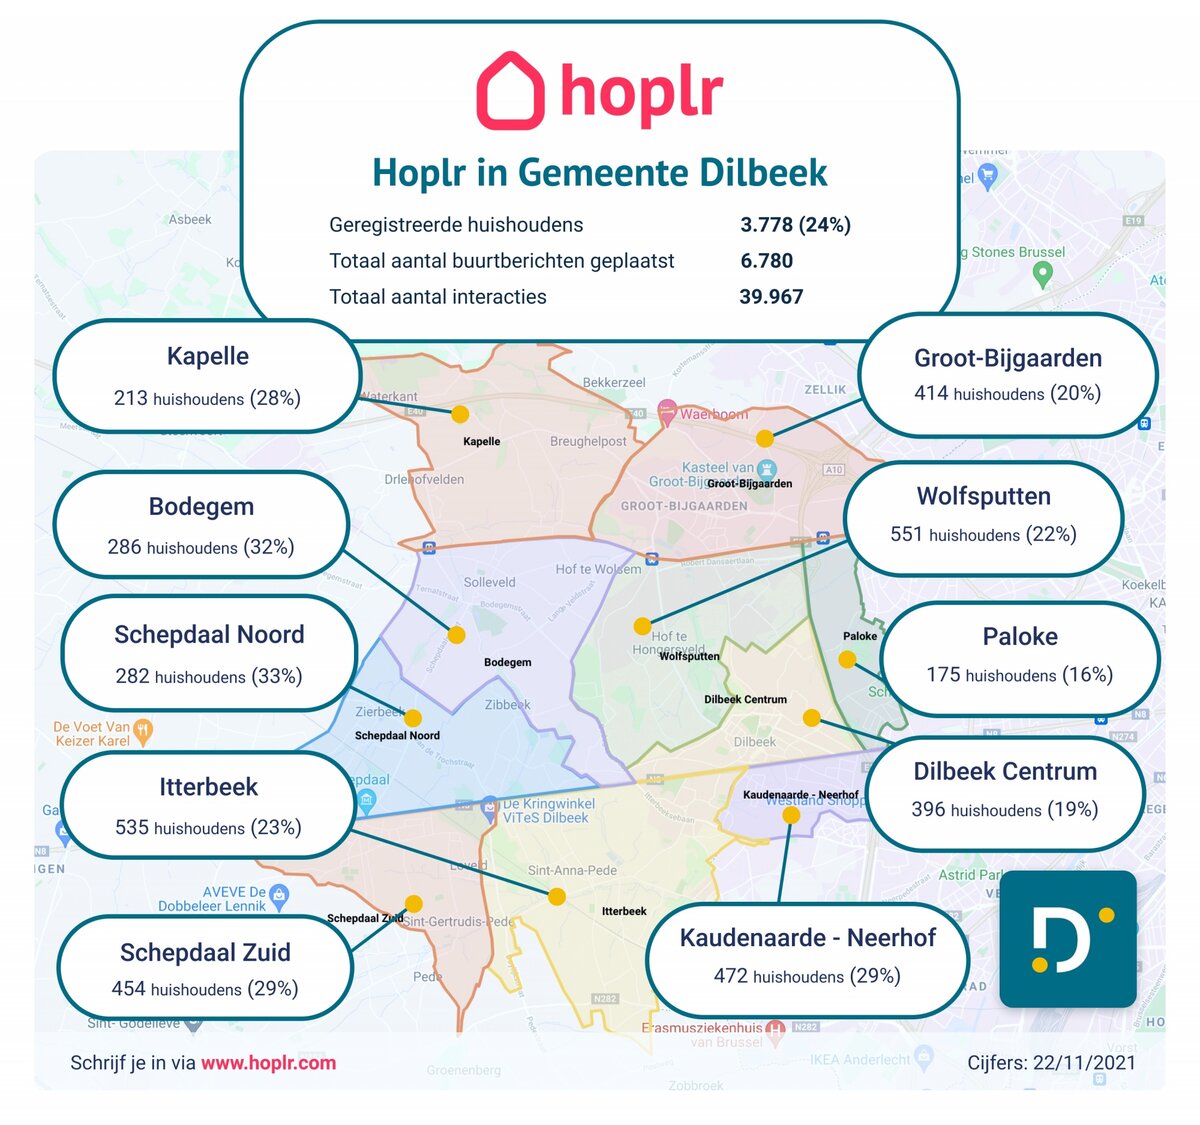 Bijna een kwart van huishoudens actief op Hoplr